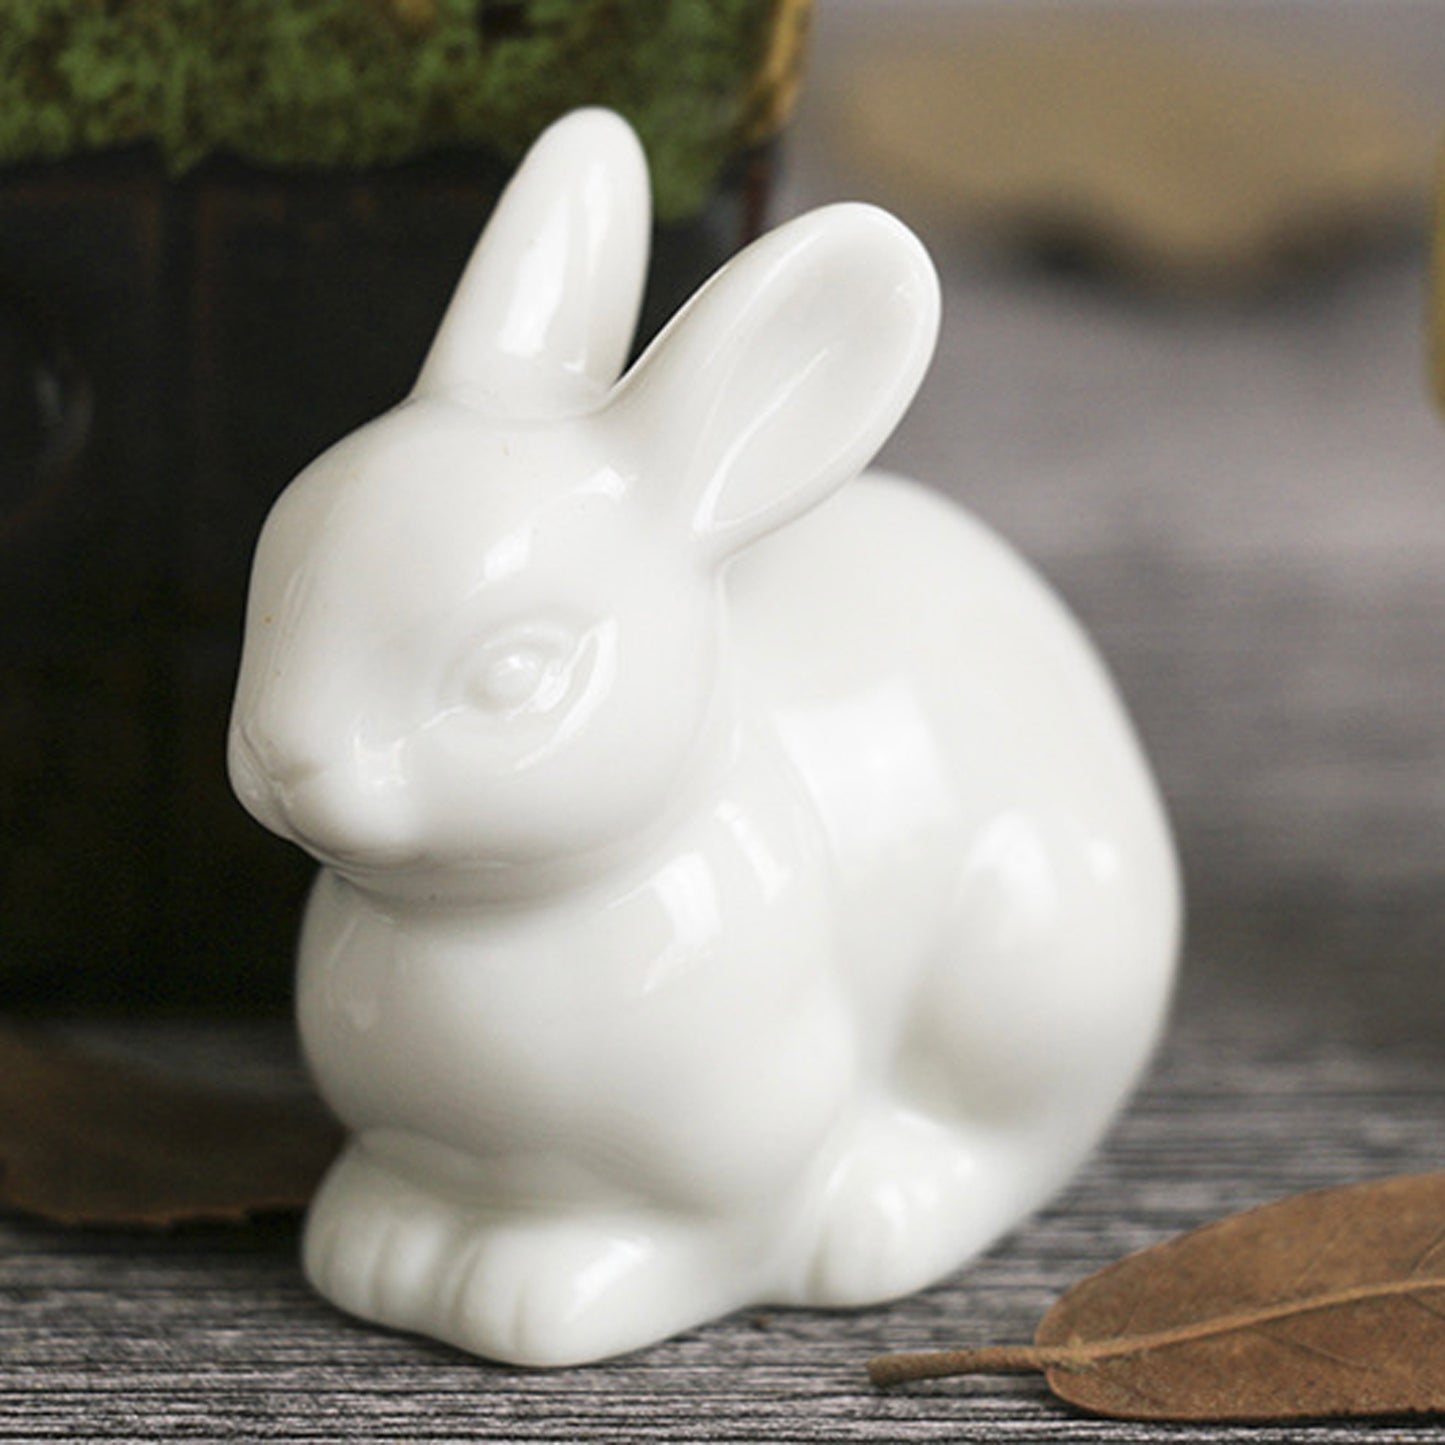 White Ceramic Bunny Statue